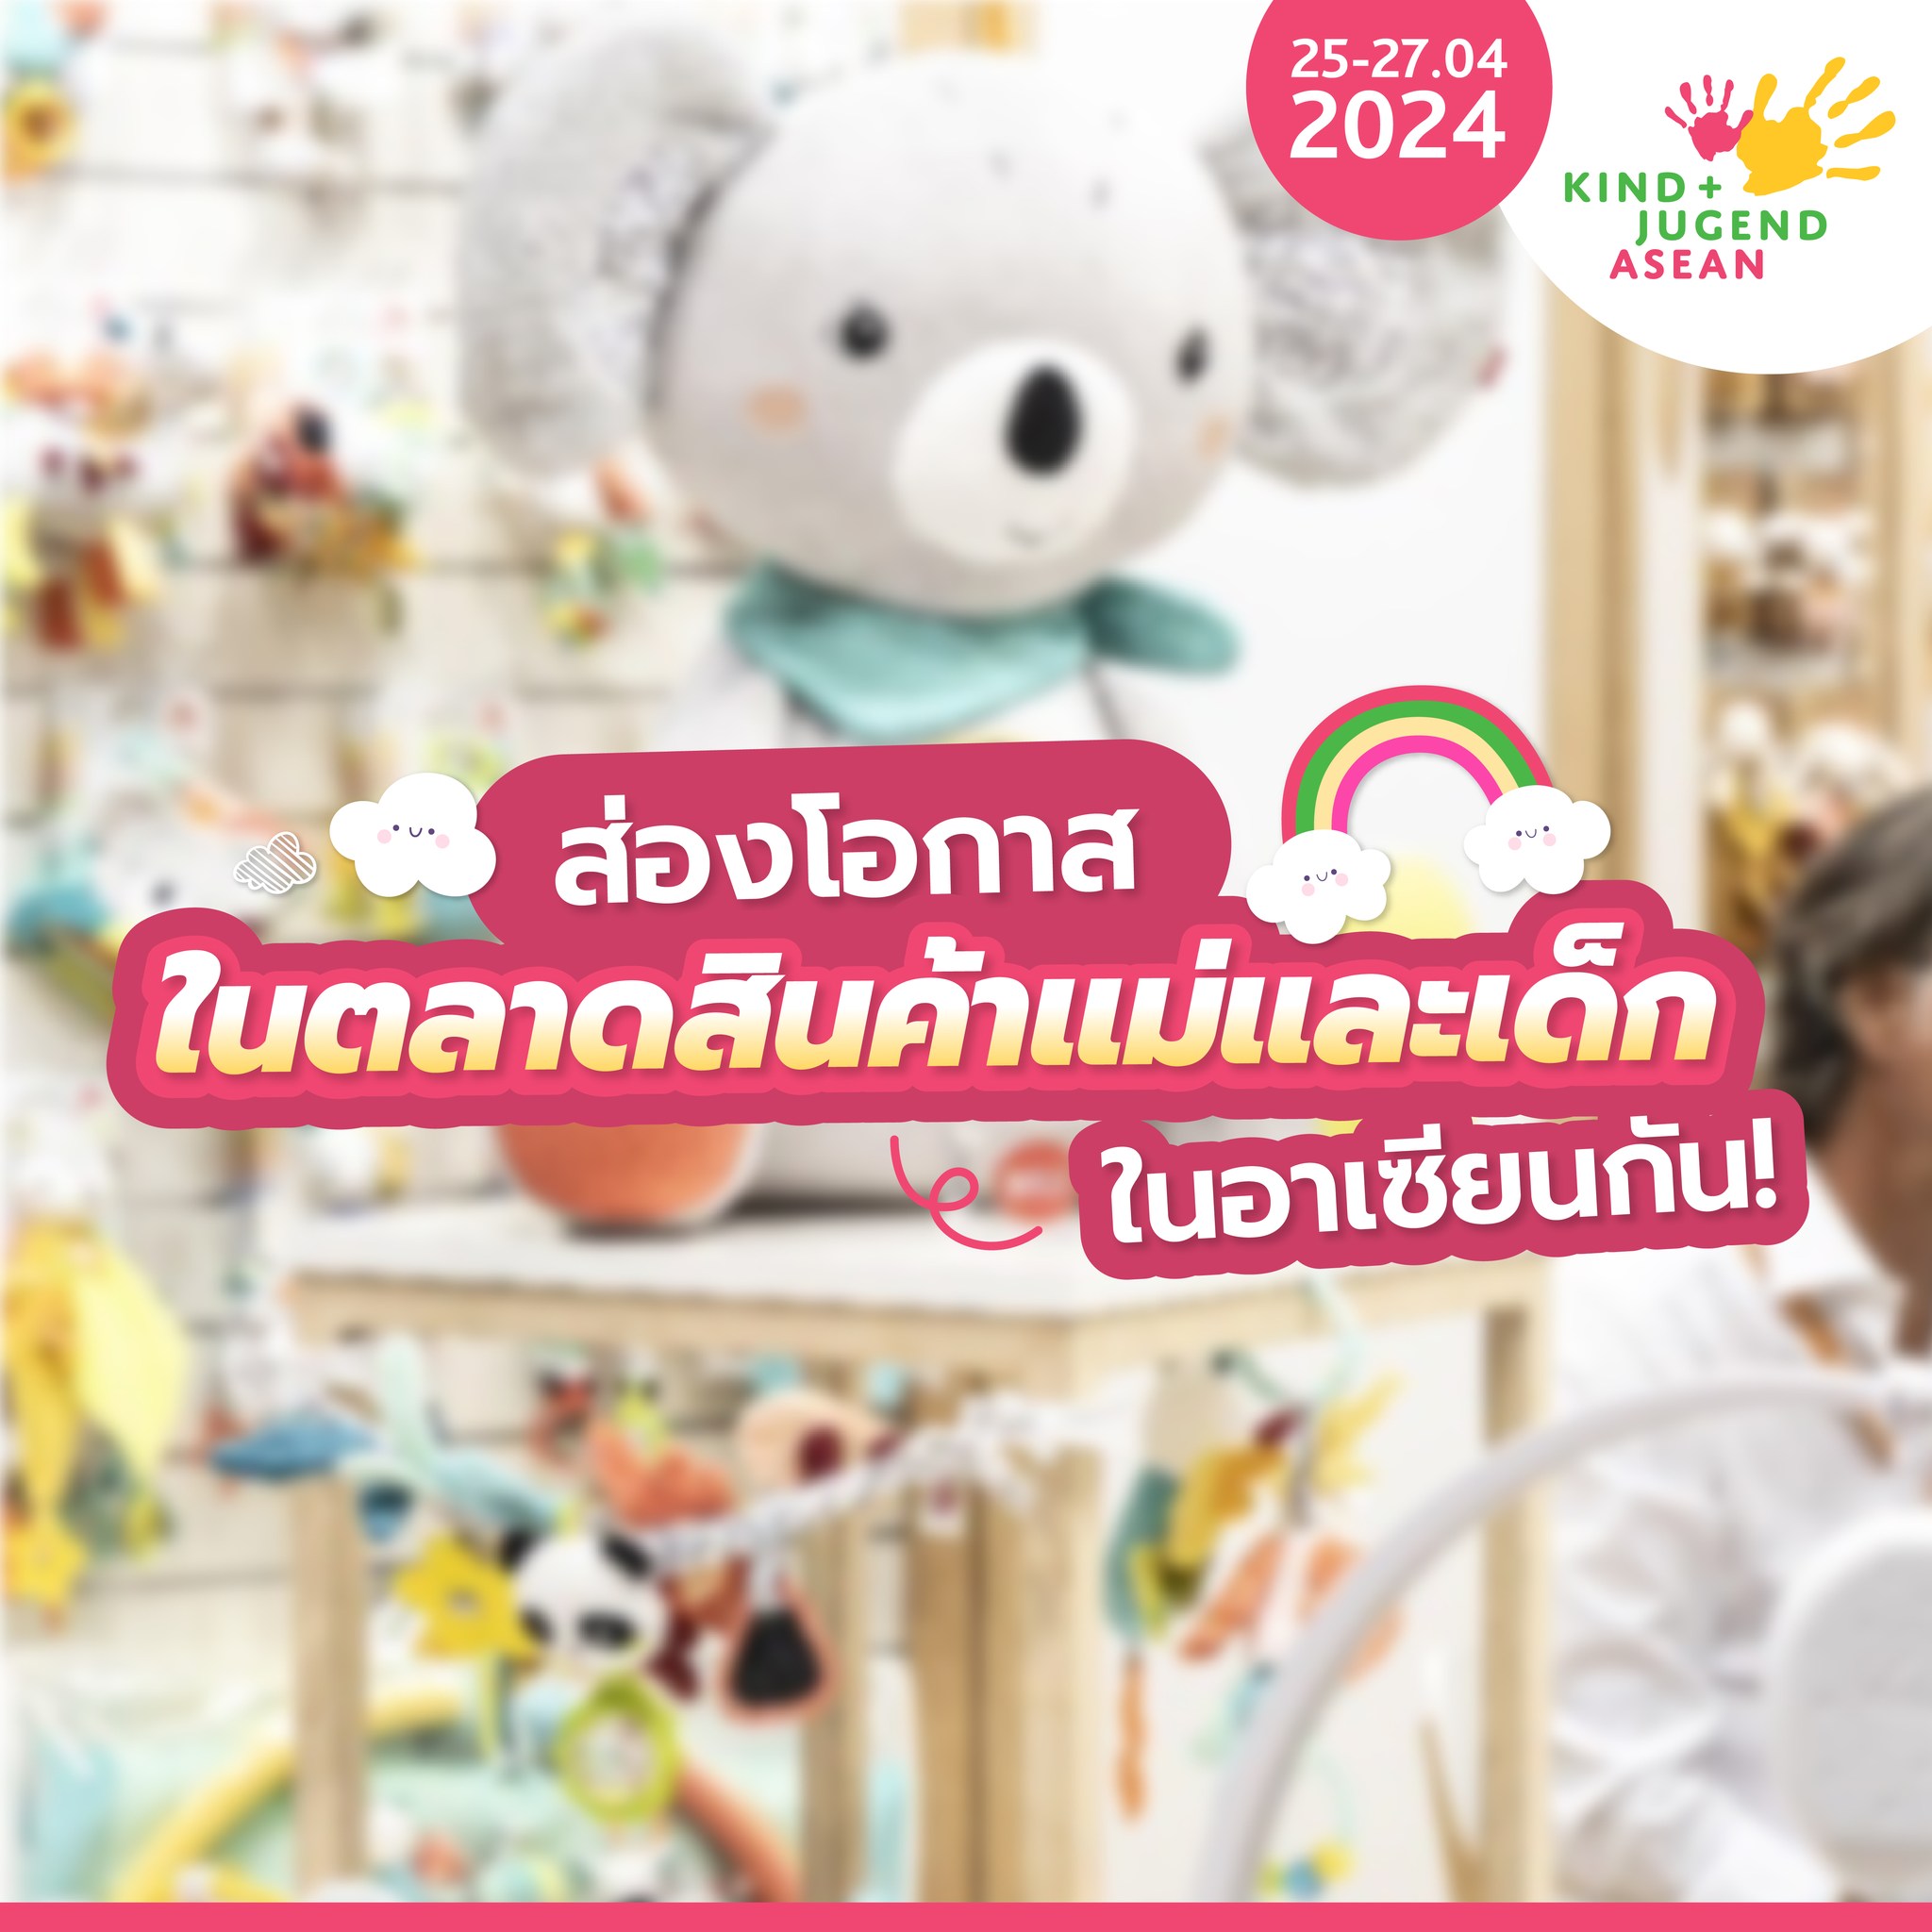 ข่าวประชาสัมพันธ์ - PR News นับถอยหลังเตรียมพบกับ Kind + Jugend ASEAN 2024 วันที่ 25 - 27 เม.ย. 67 ลงทะเบียนล่วงหน้า ลุ้นรับ Art Toy จาก POPMART ได้แล้ววันนี้